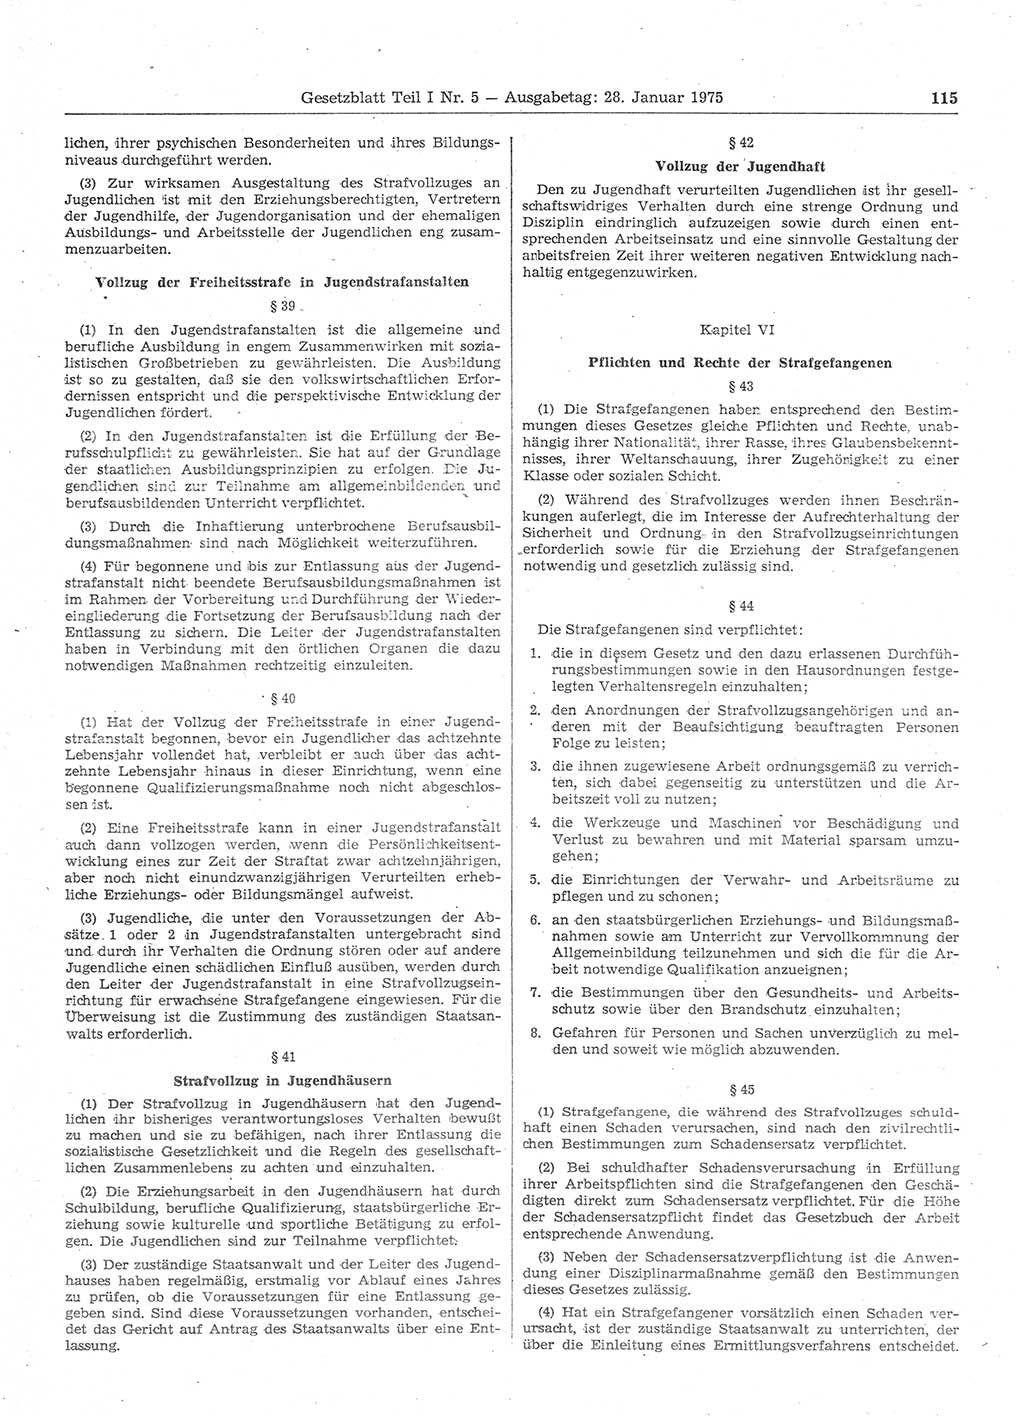 Gesetzblatt (GBl.) der Deutschen Demokratischen Republik (DDR) Teil Ⅰ 1975, Seite 115 (GBl. DDR Ⅰ 1975, S. 115)